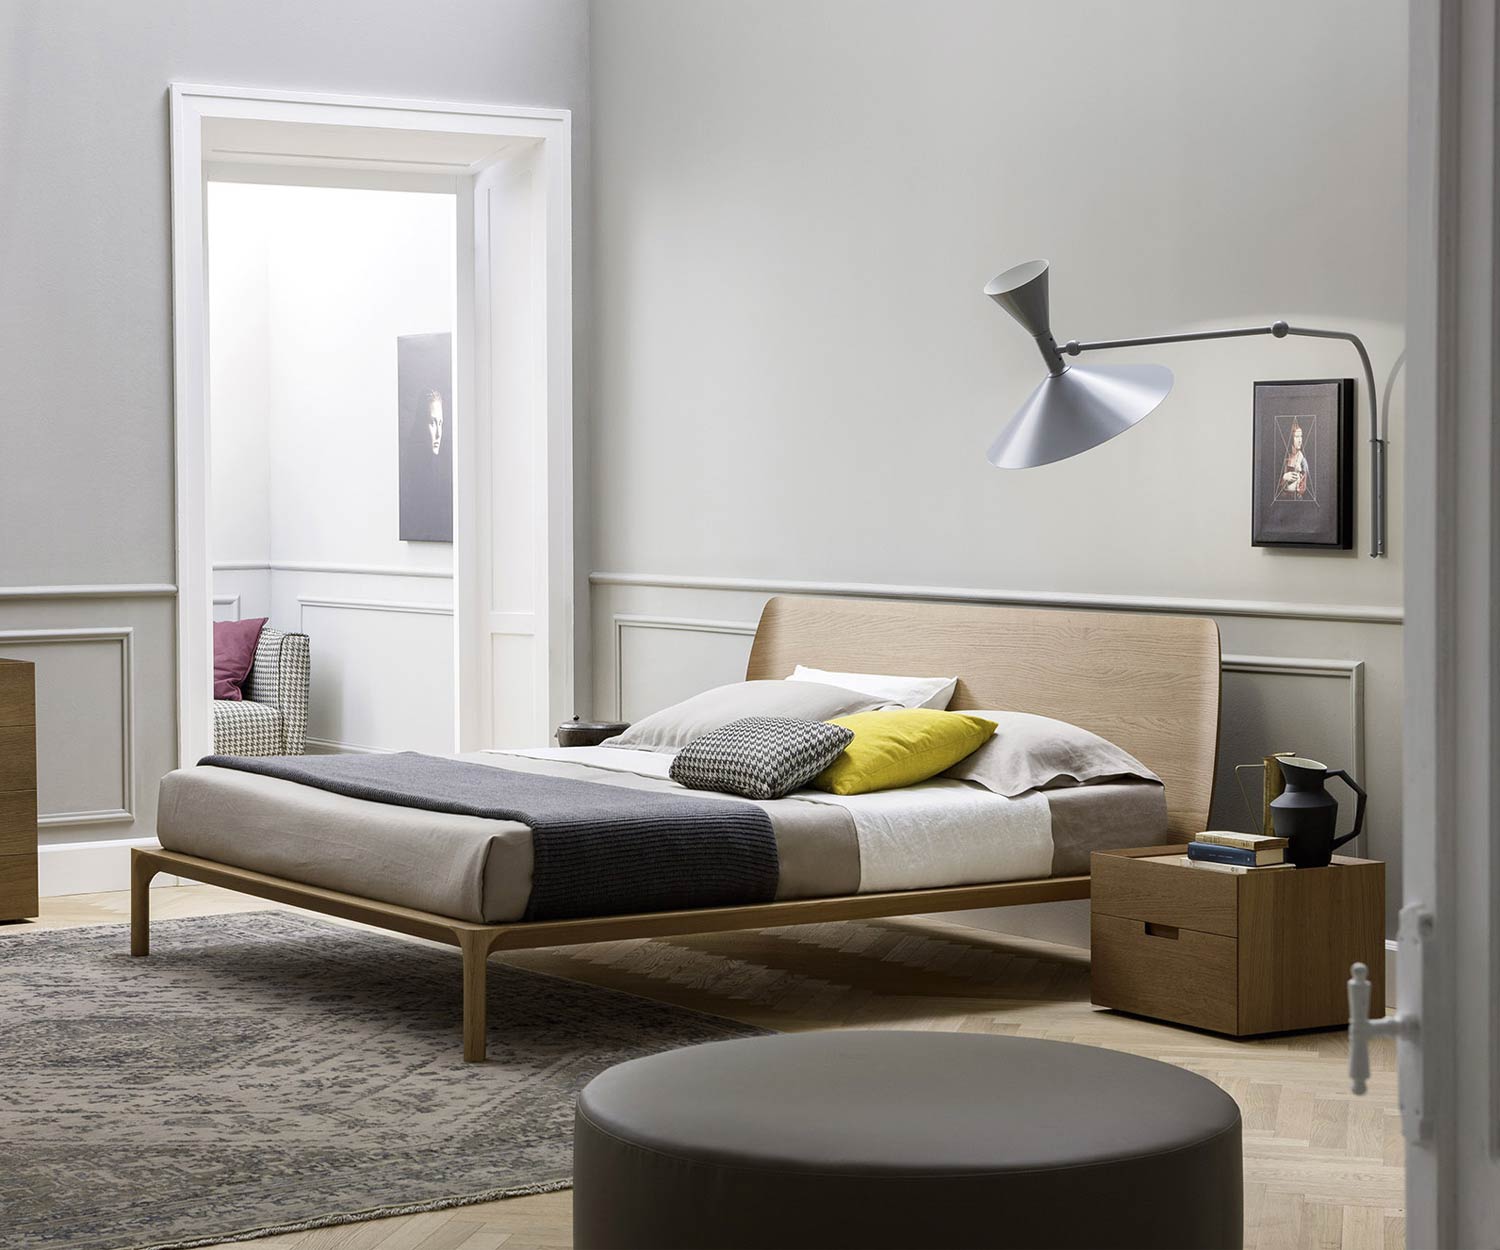 Hoogwaardig design nachtkastje in de slaapkamer naast het bed gepresenteerd voor bezichtiging in bruin